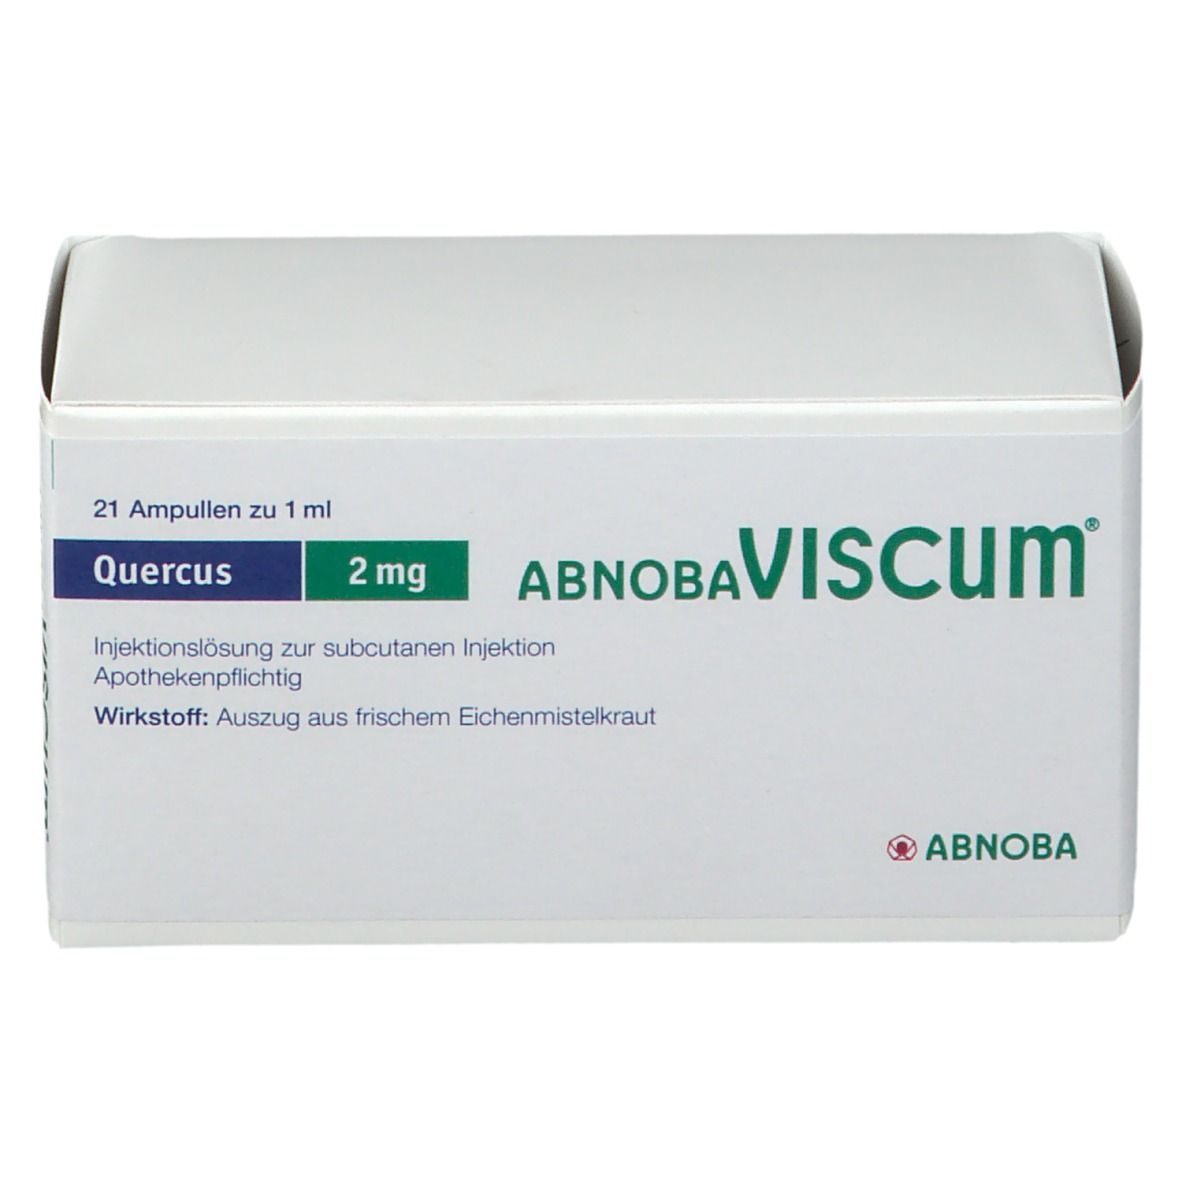 abnobaVISCUM® Quercus 2 mg Ampullen